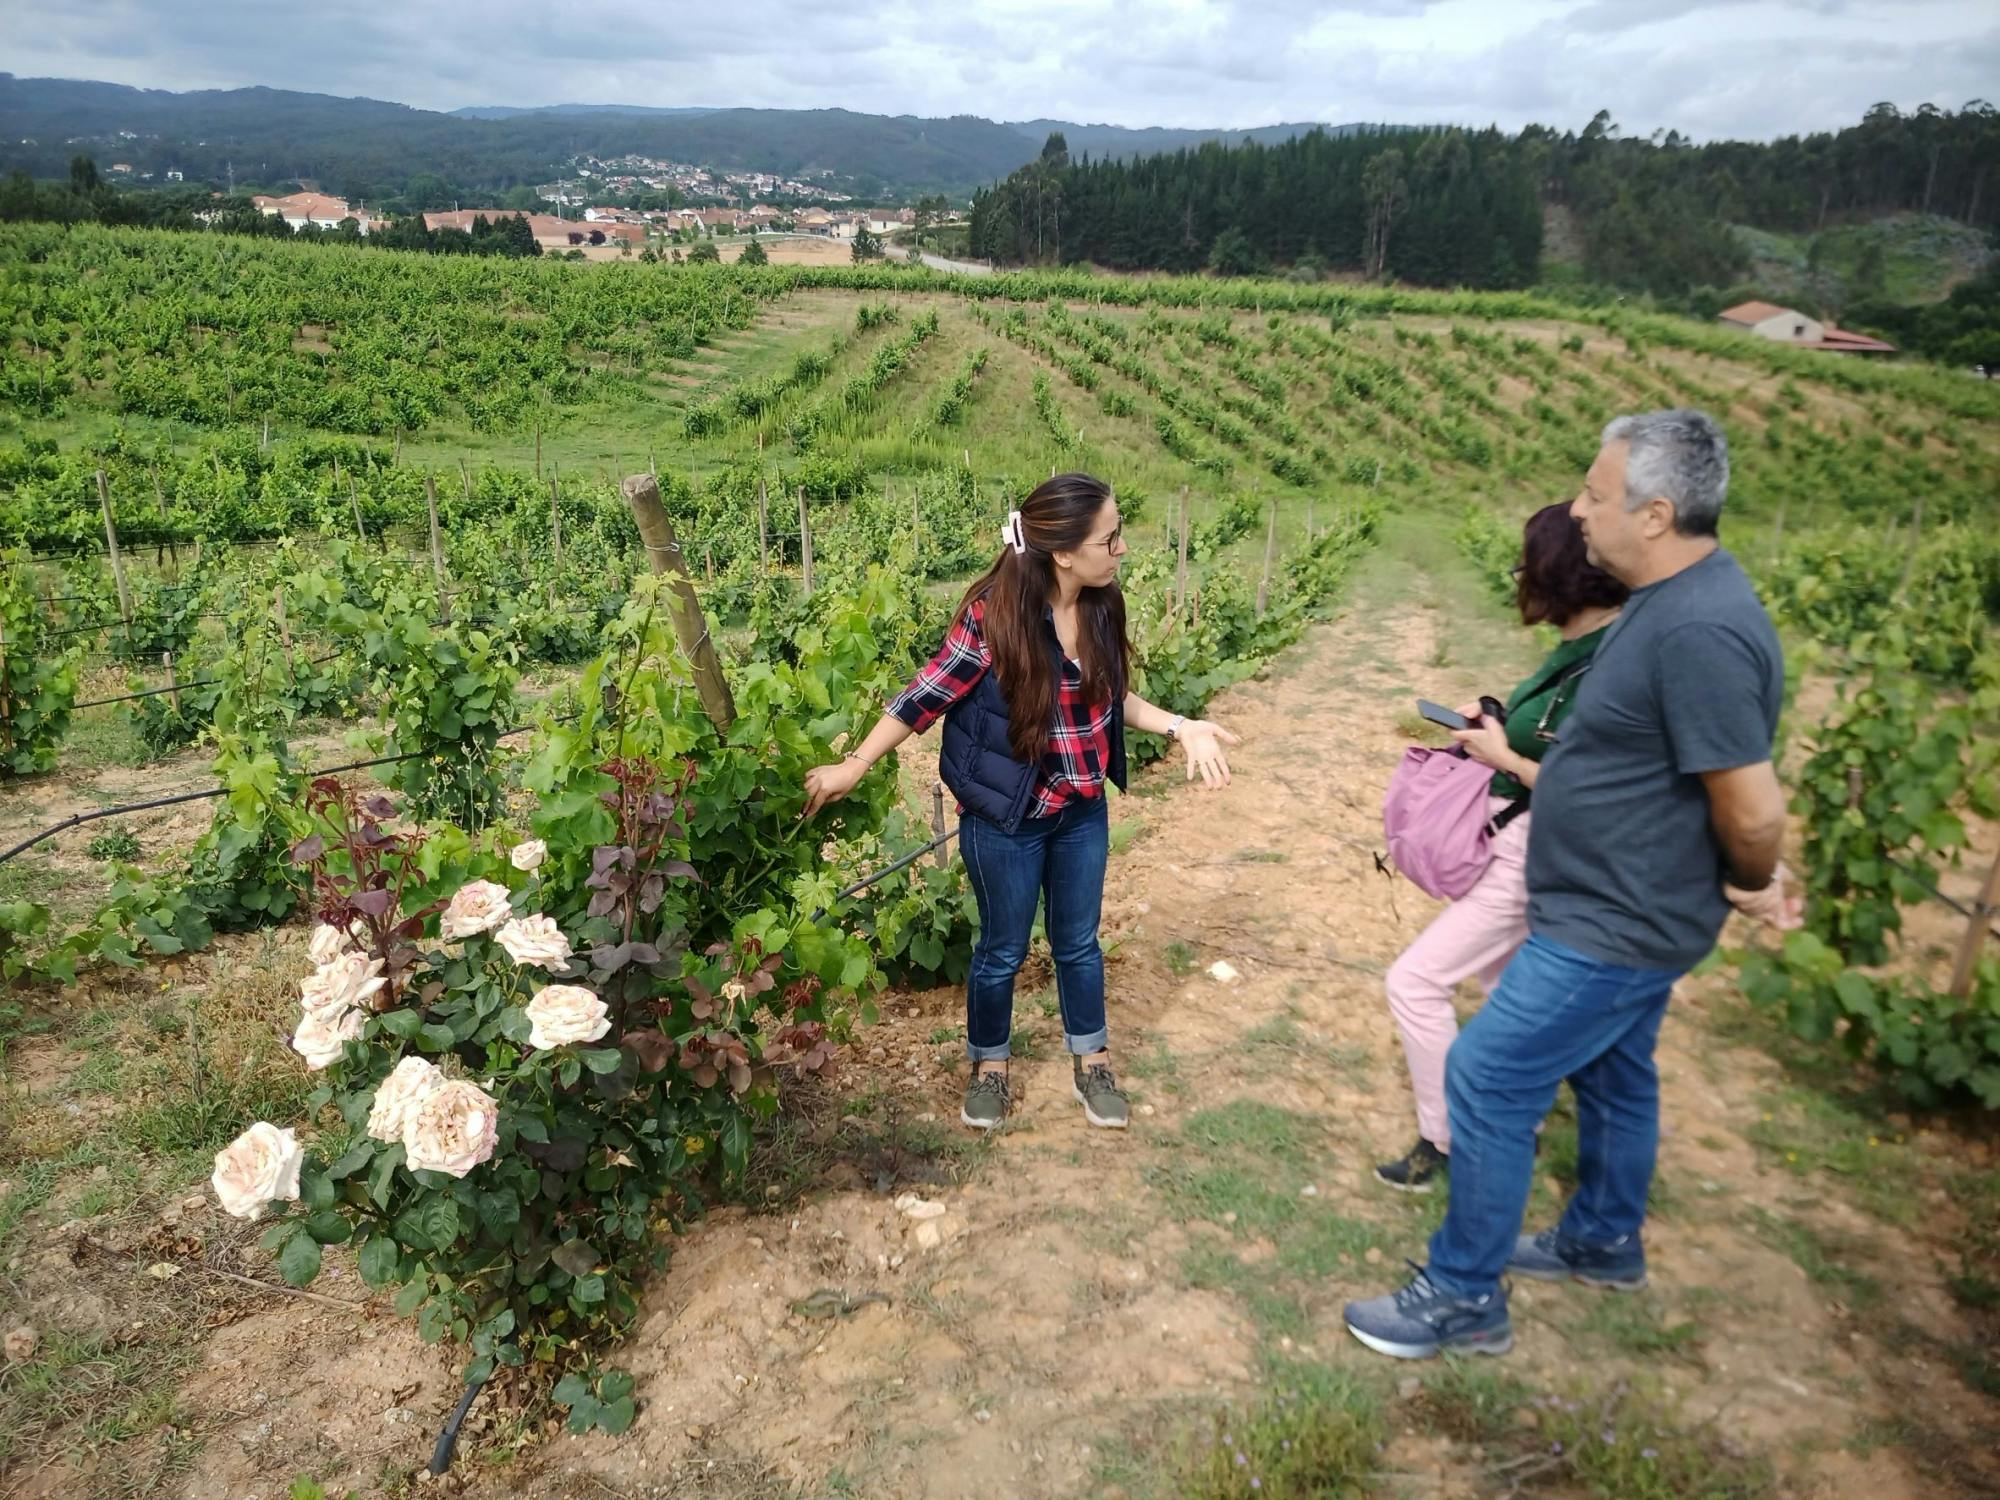 Excursão de dia inteiro ao Dão saindo de Coimbra com degustação de vinhos e almoço